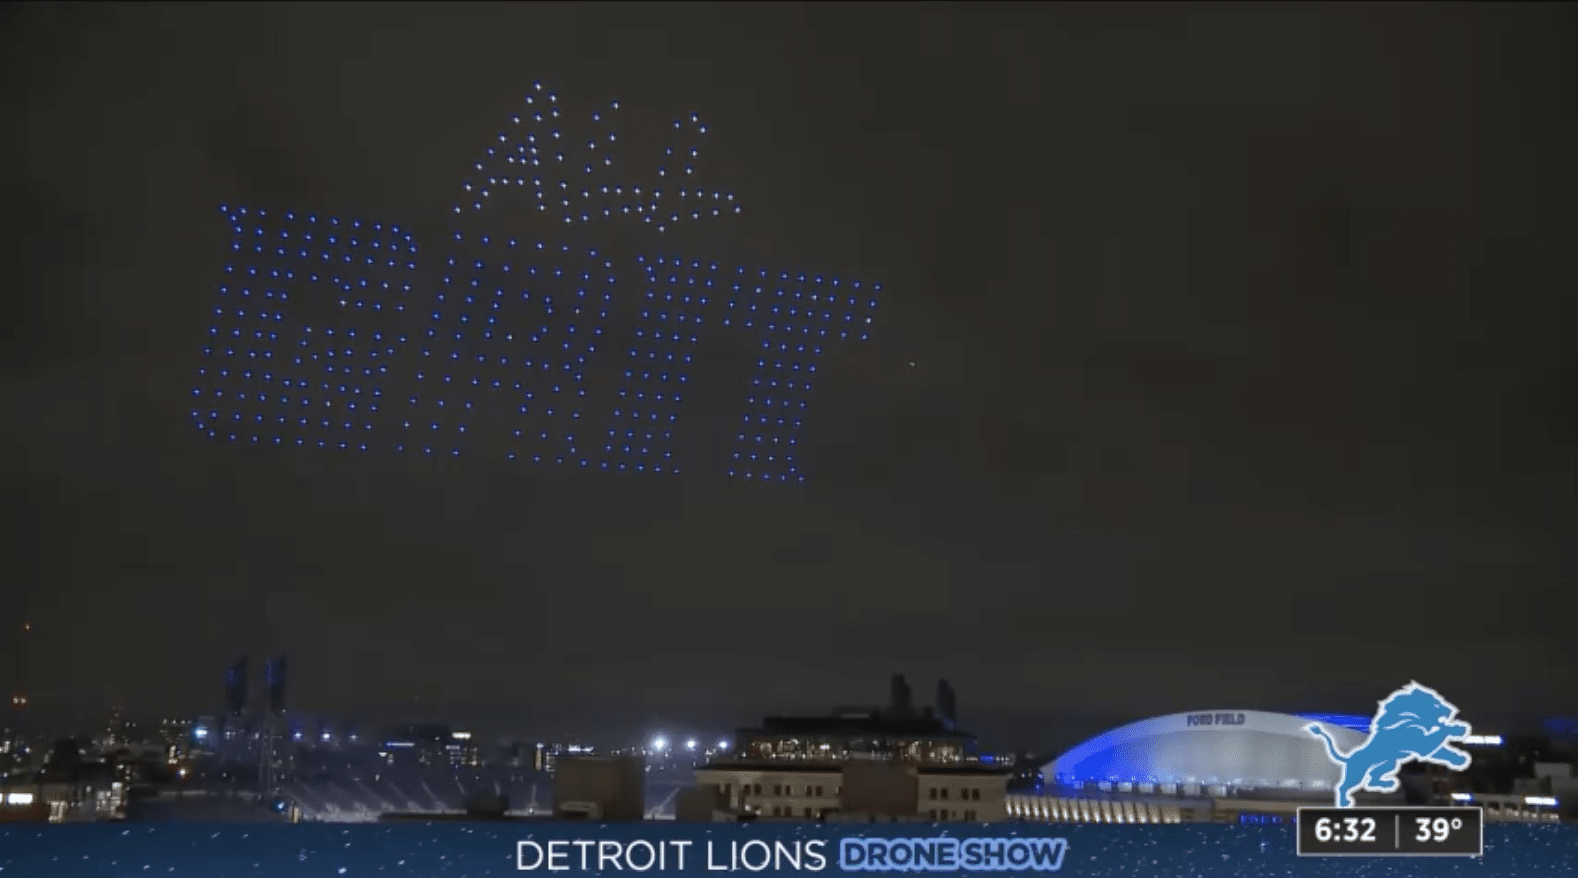 Detroit Lions drone show